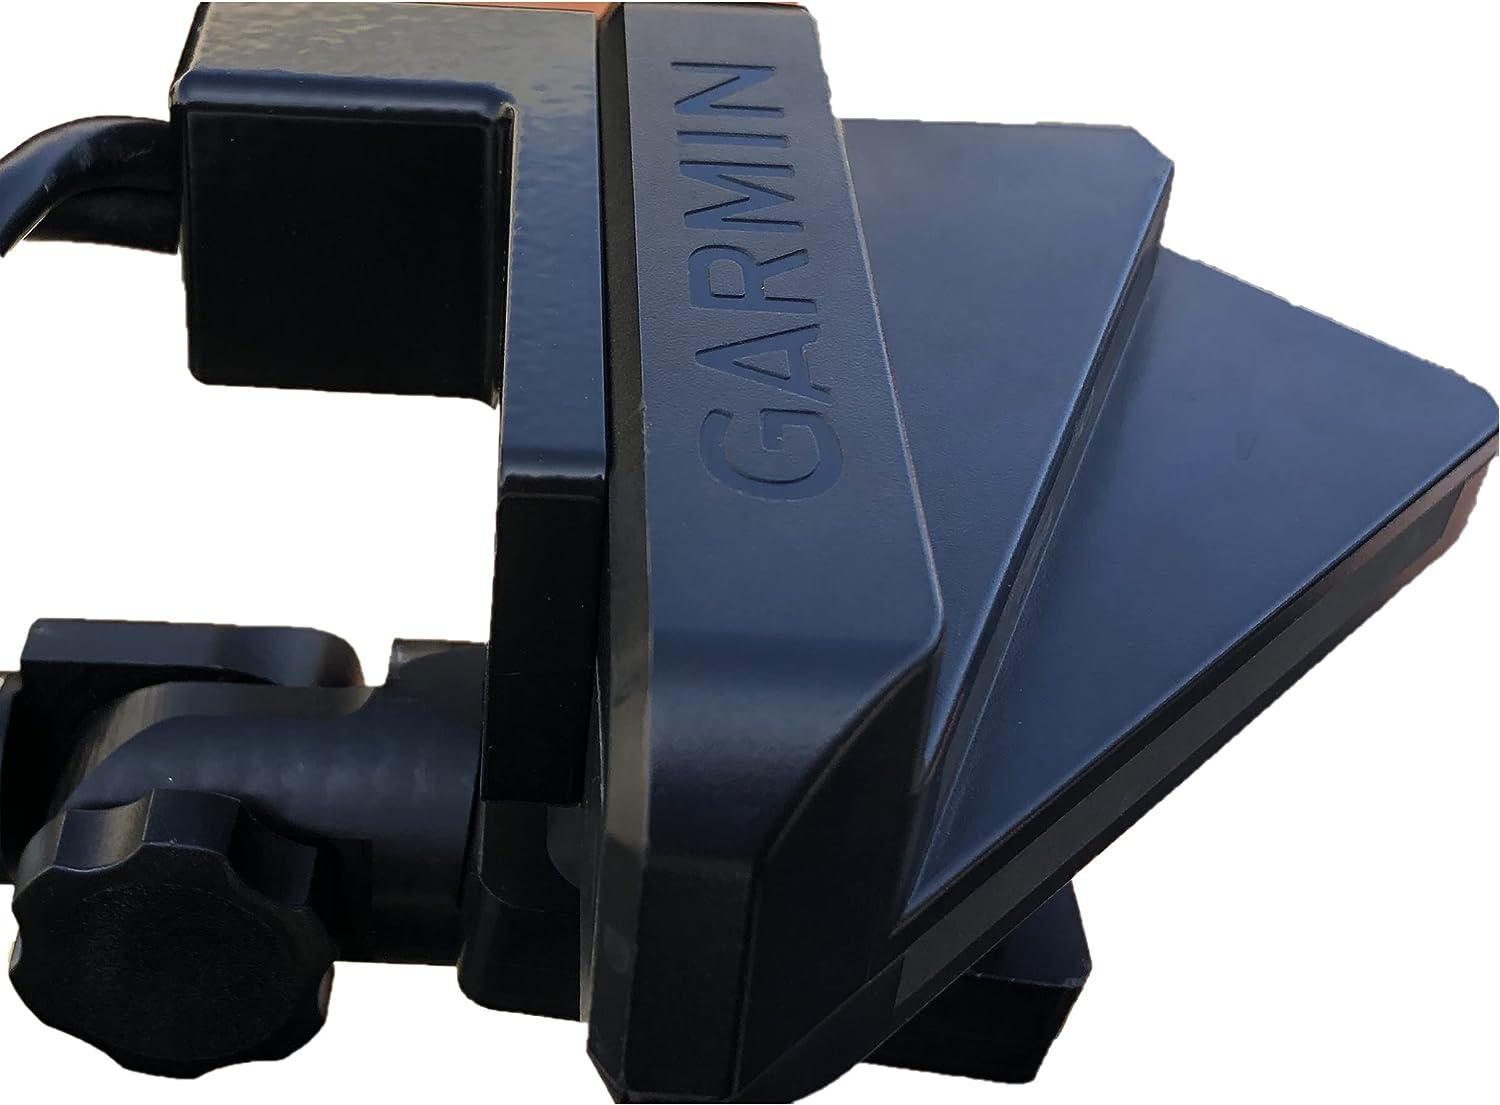  Cable Saver for Garmin Panoptix Livescope Transducer